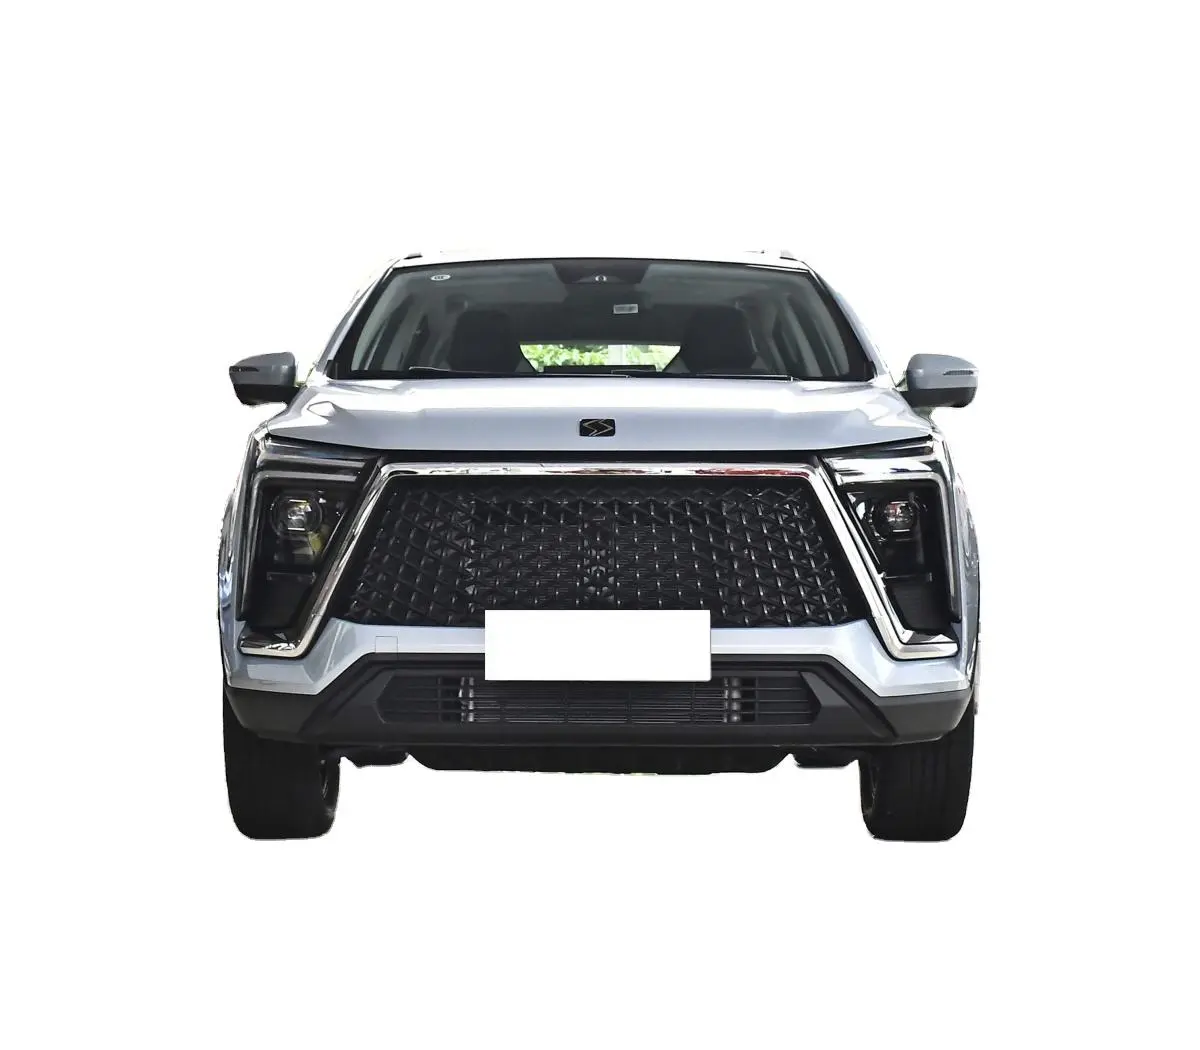 2022 2023 jac Sol SUV sihao X6 1.5t DCT tiêu thụ nhiên liệu thấp Xăng Xăng 5 cửa 5 chỗ hiệu suất cao giá rẻ mới SUV